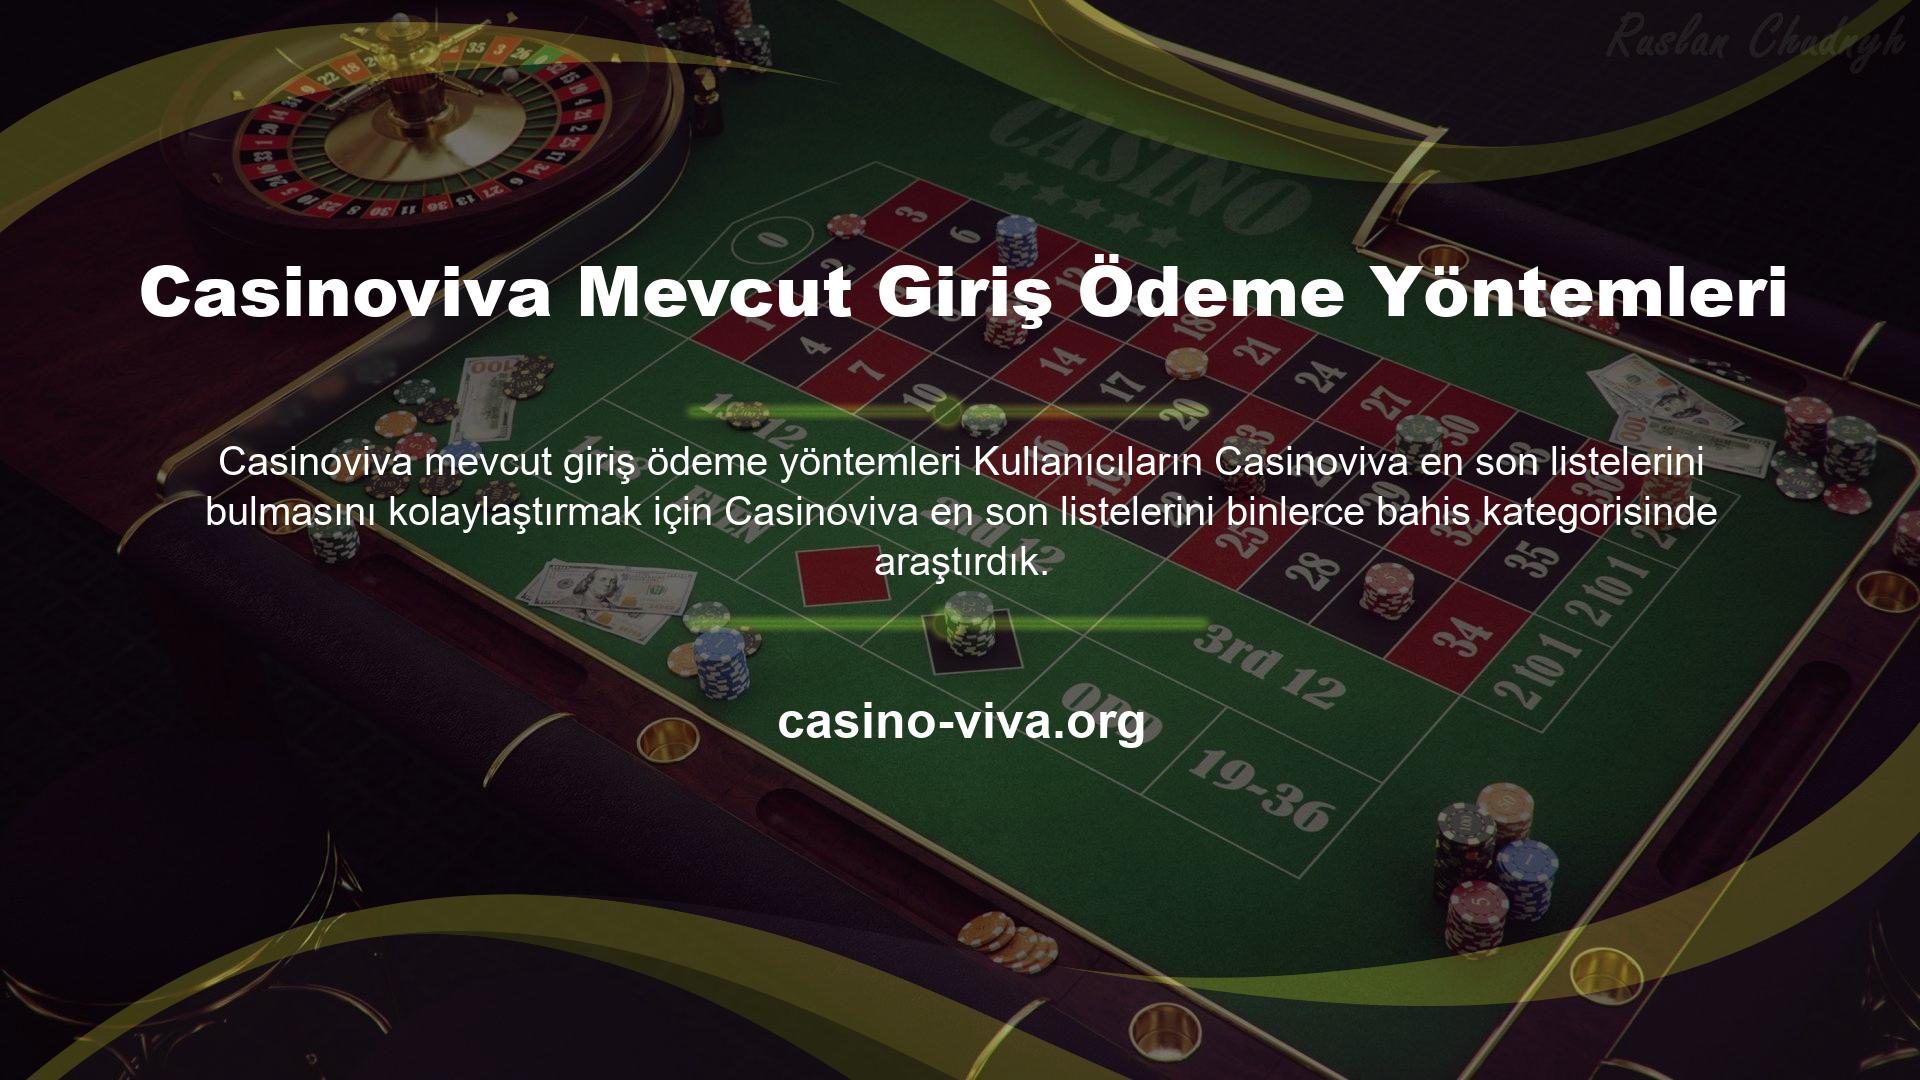 Casinoviva Mevcut Giriş Ödeme Yöntemleri